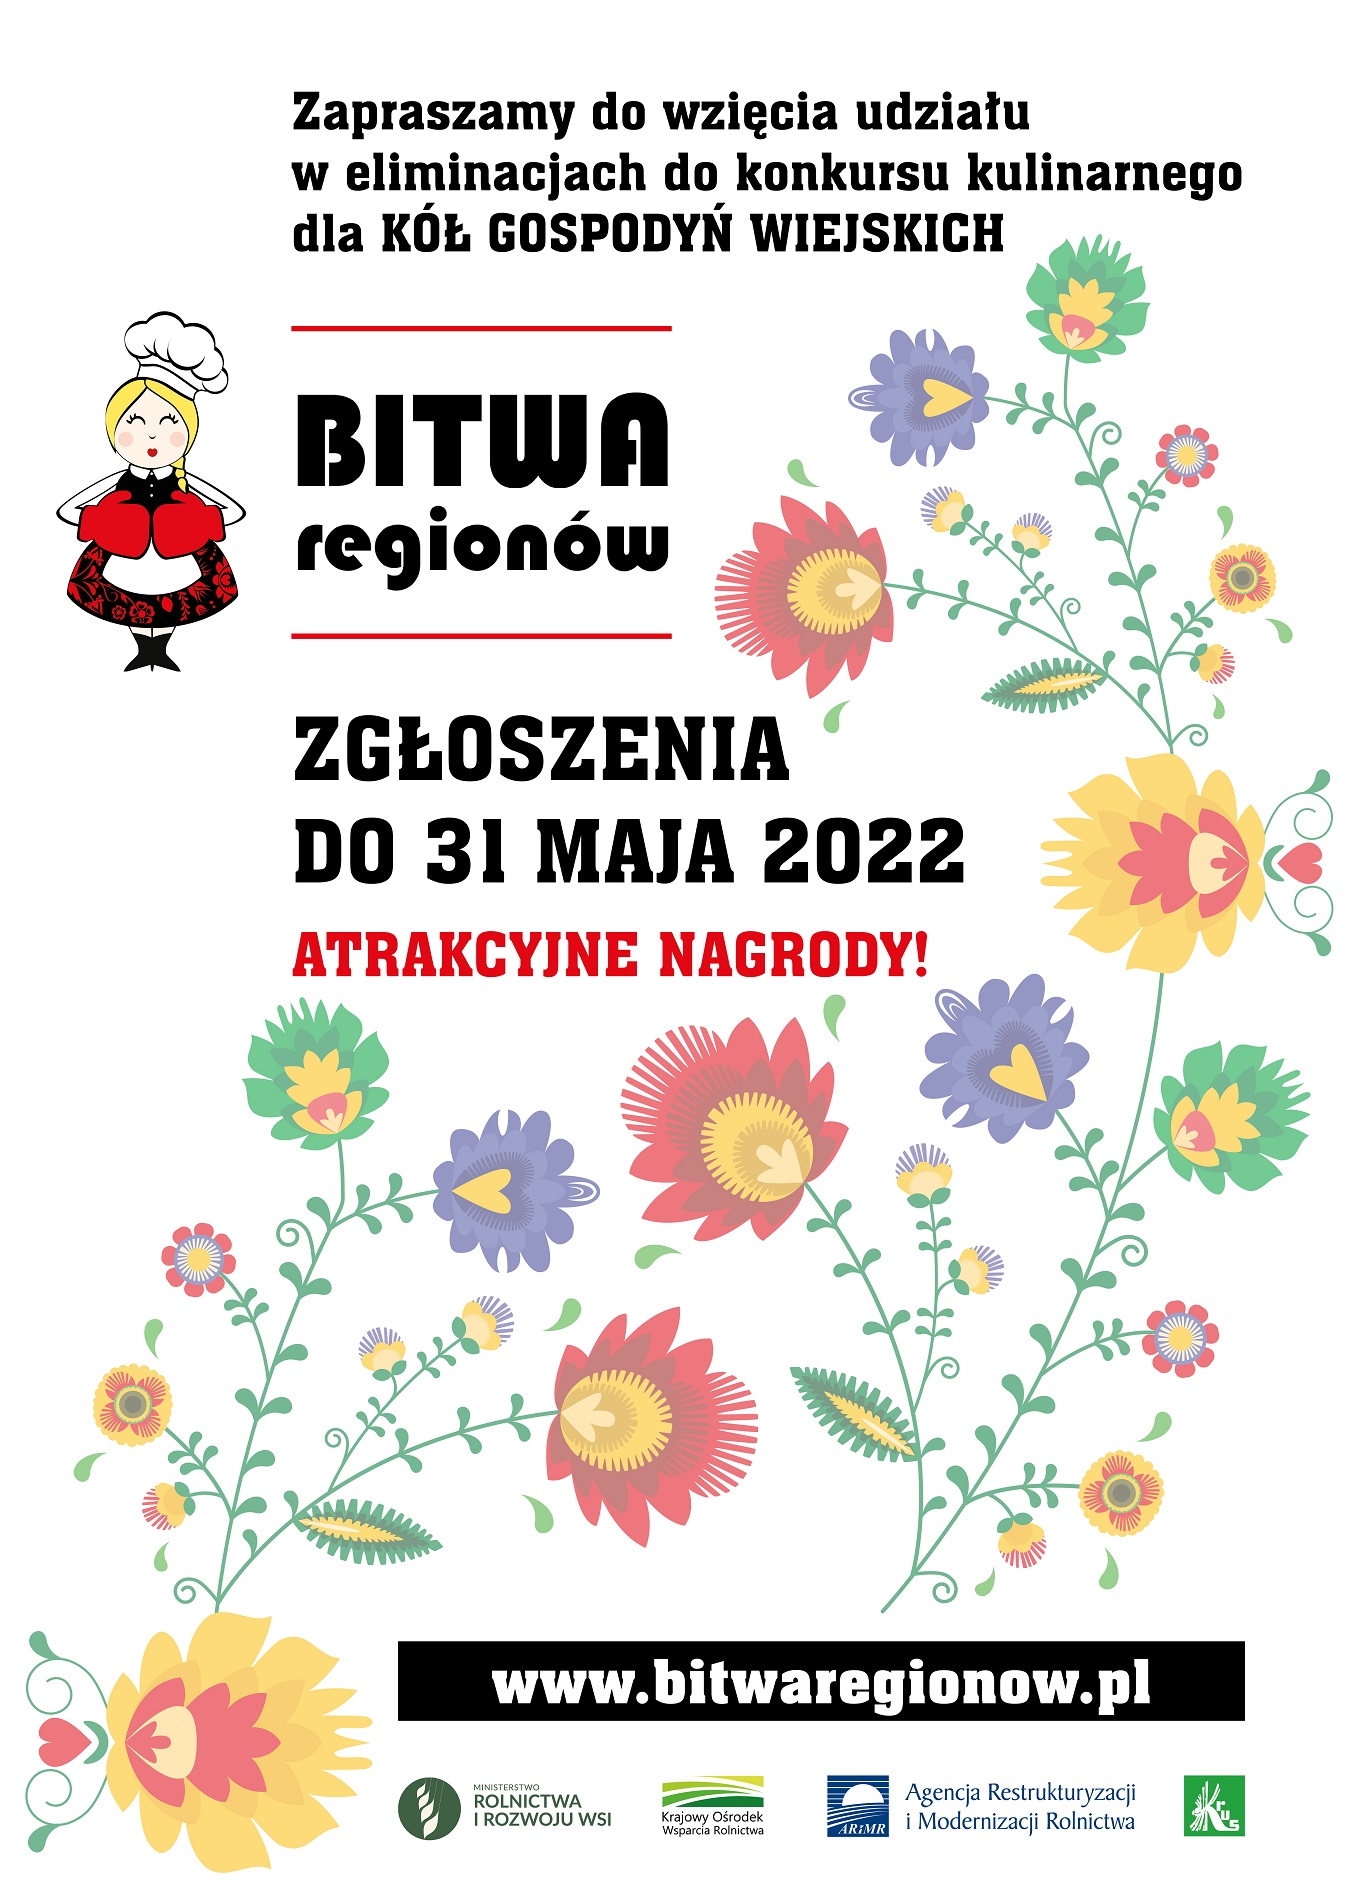 Plakat promujący konkurs Bitwa Regionów